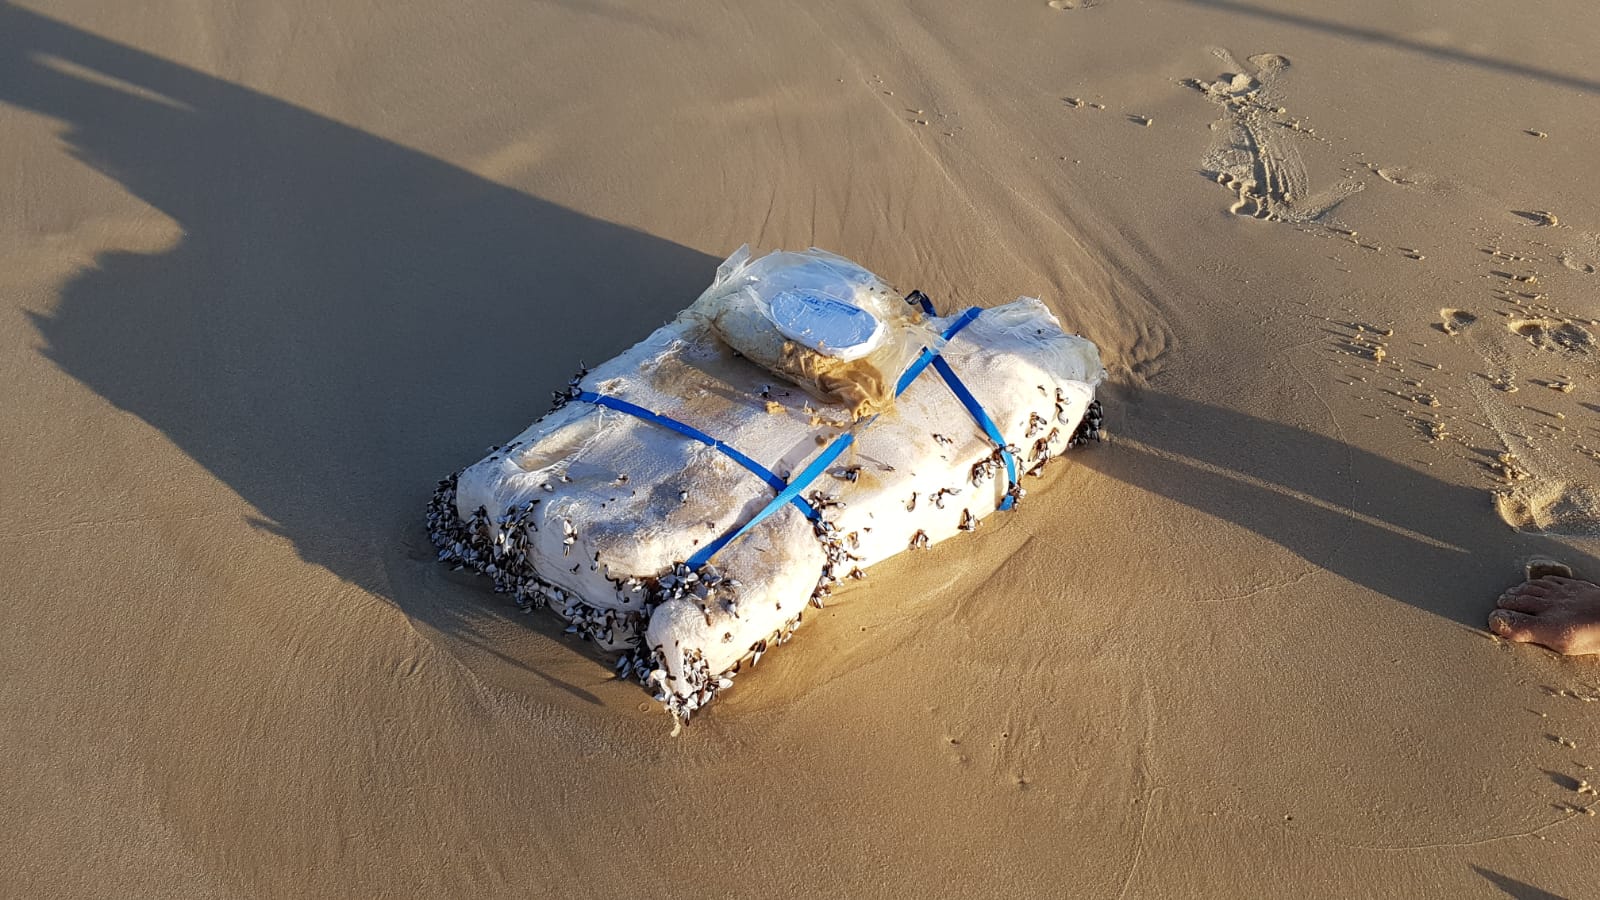 ضبط كيس يحتوي على أكثر من 20 كيلوغراما من السموم على شاطئ بحر اشدود